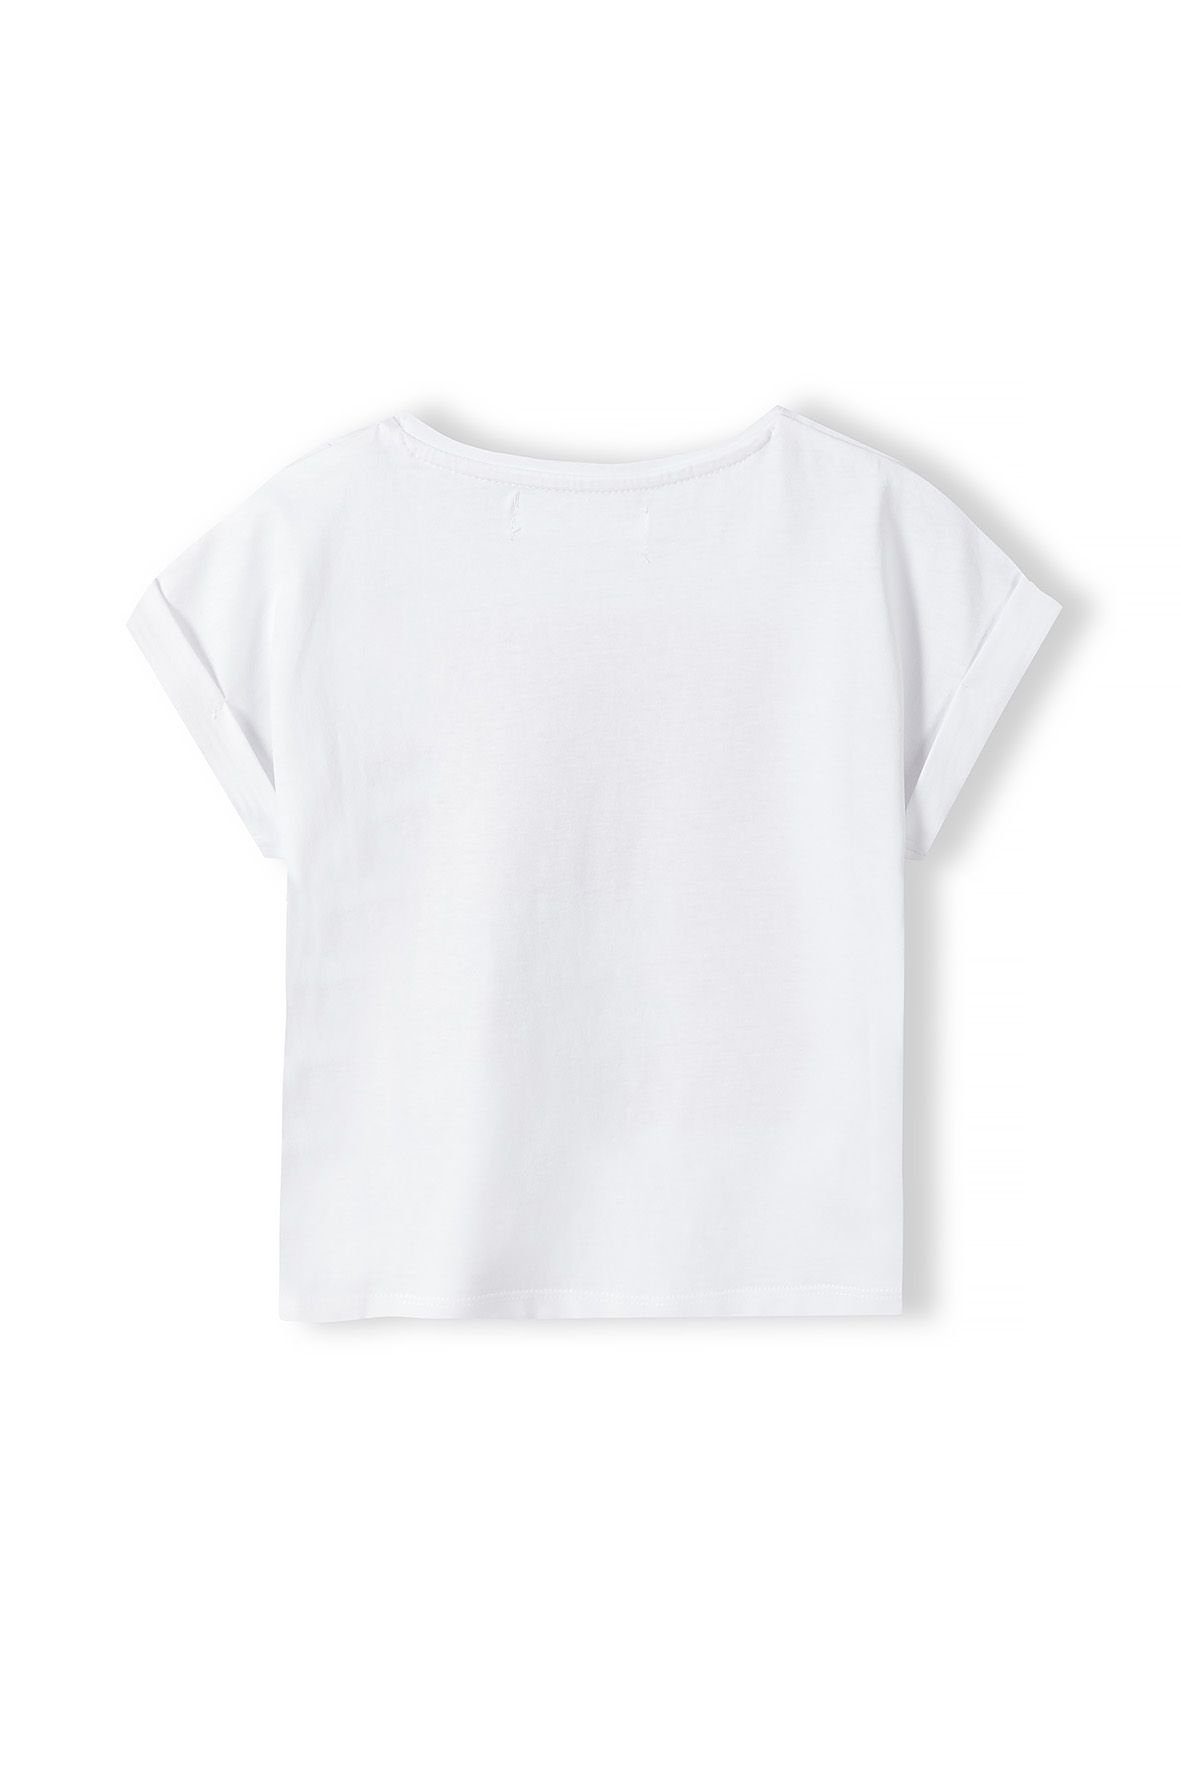 MINOTI T-Shirt Modisches T-Shirt mit Weiß (1y-8y) Aufdruck